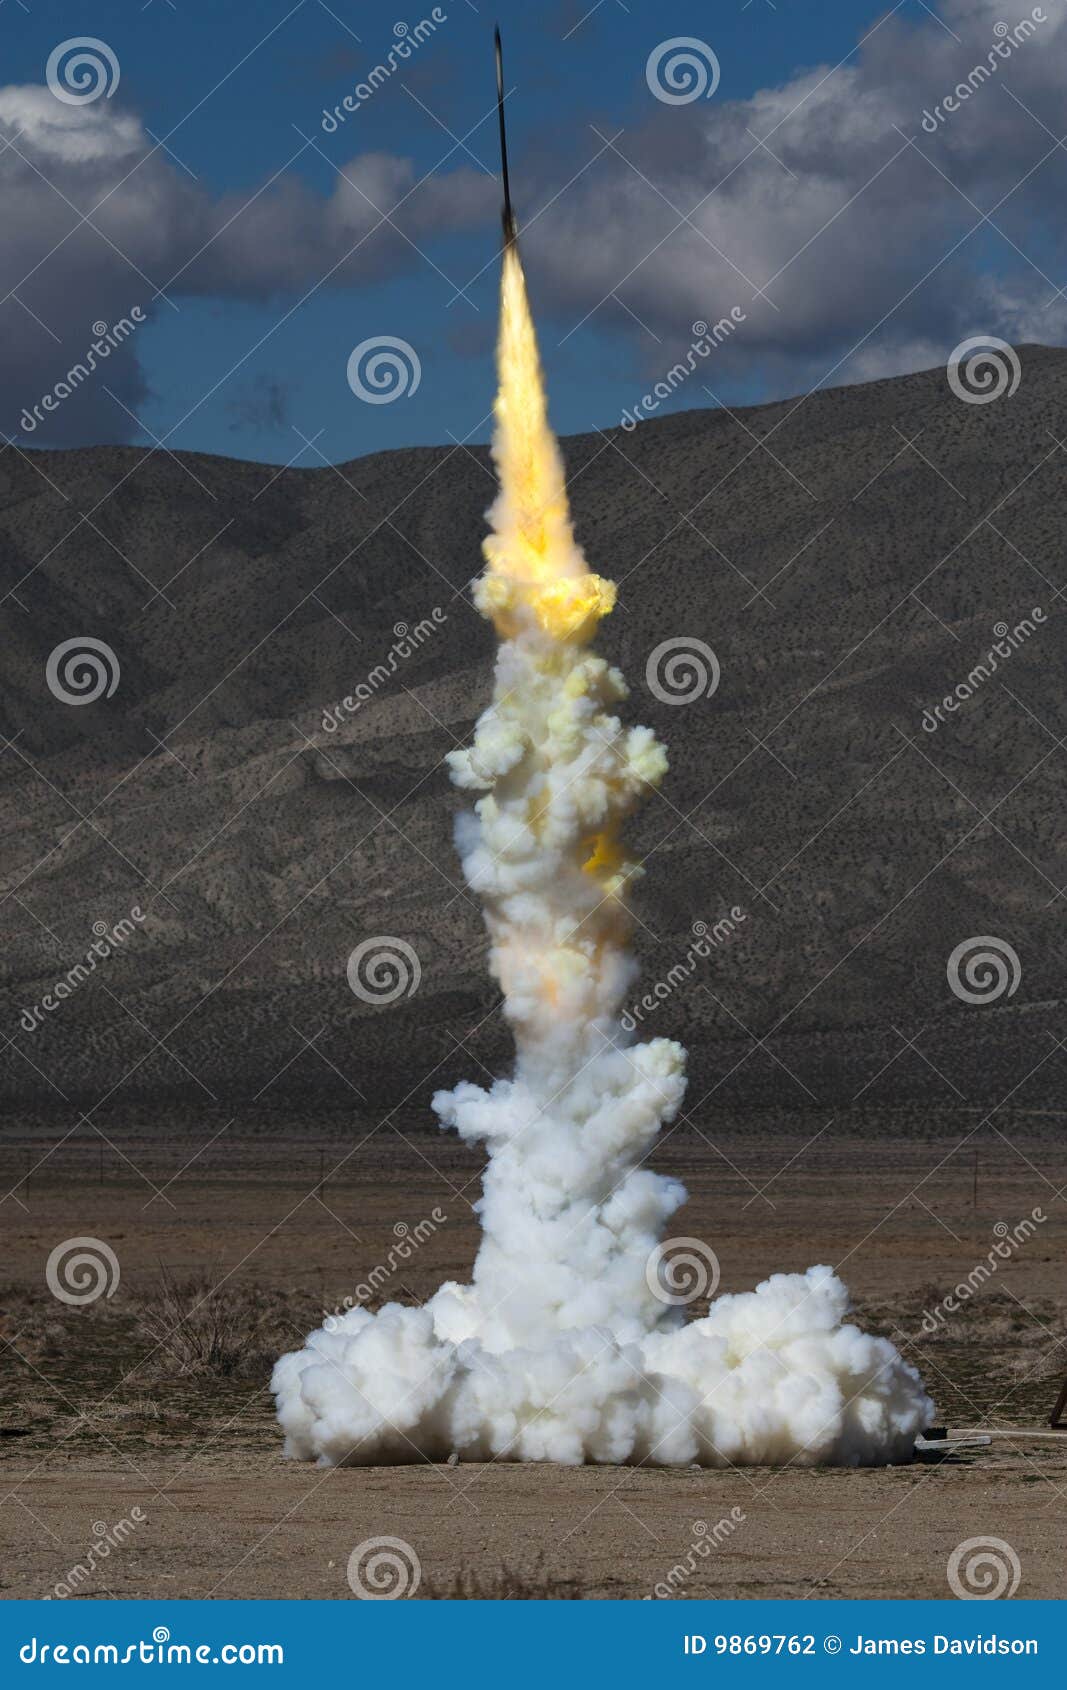 launch of a zinc sulfur rocket